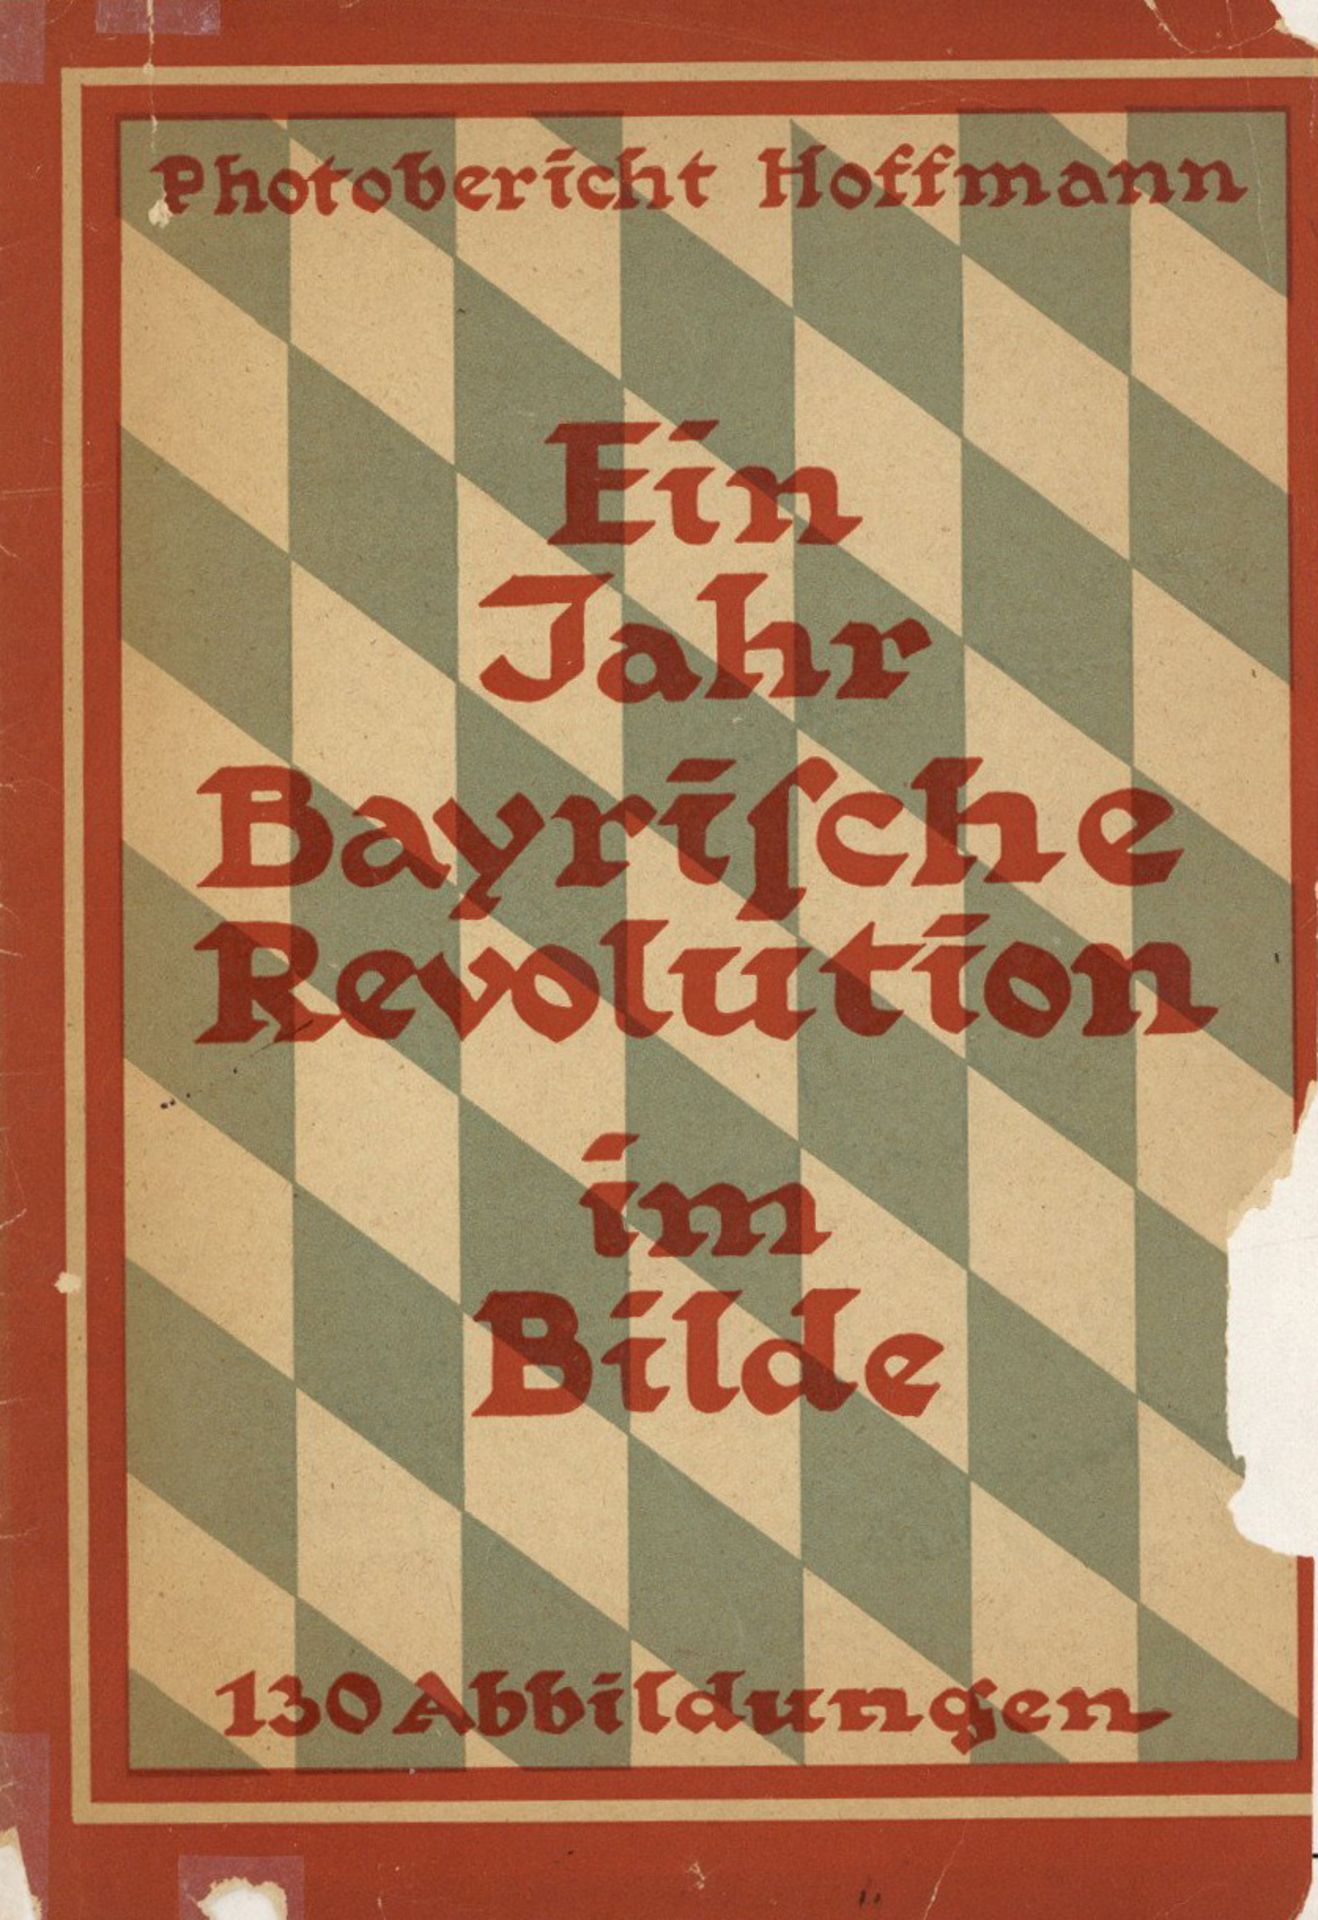 WK I Dokumente Heft Ein Jahr bayrische Revolution im Bilde von Photobericht Hoffmann 1937 (